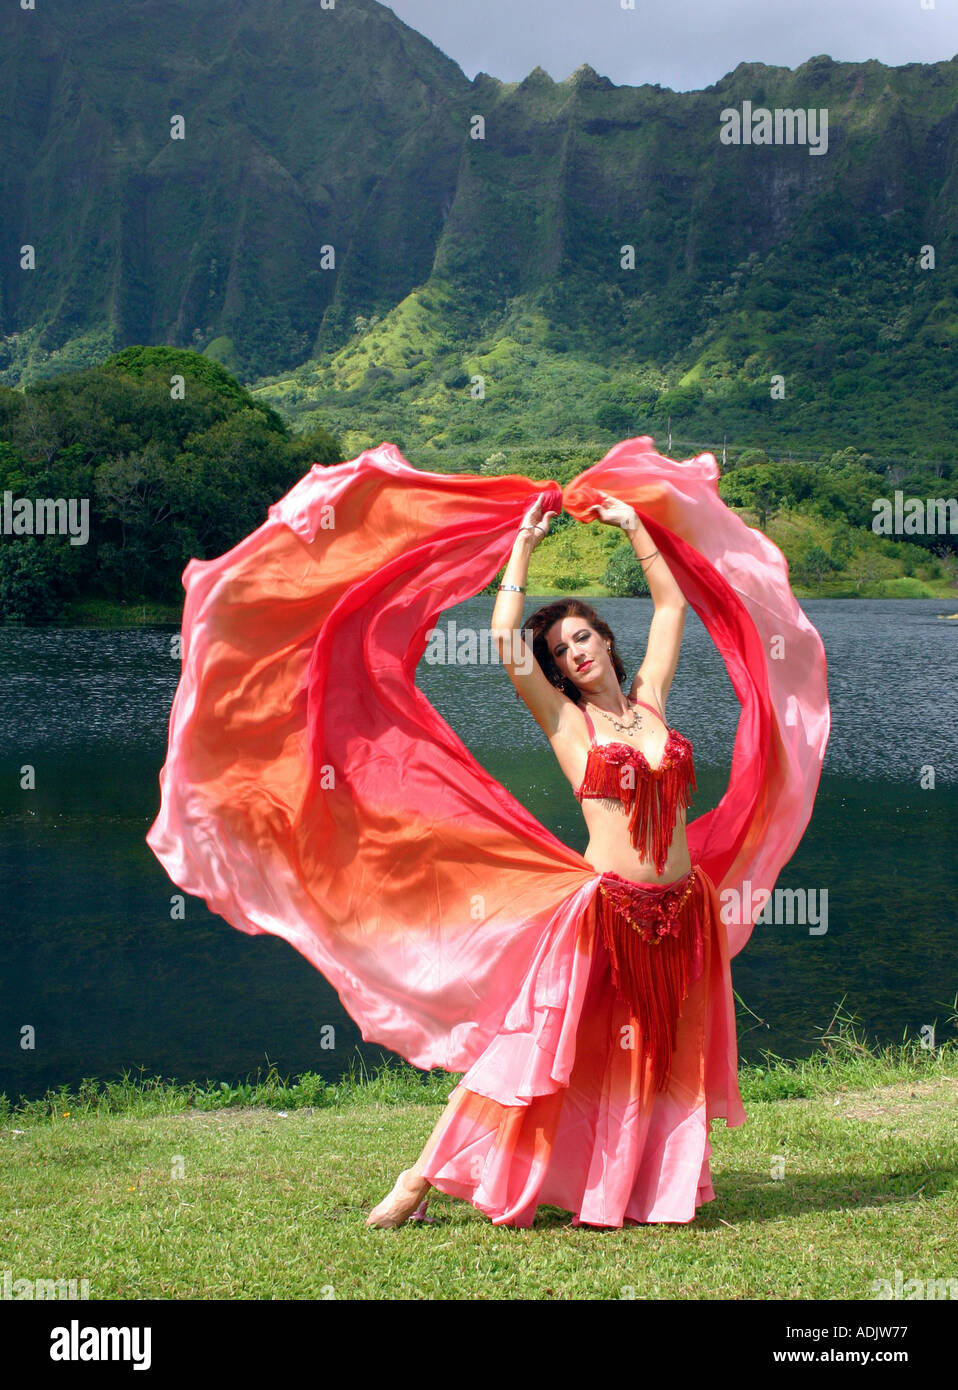 Danseuse du Ventre avec voile rouge, bras tendus au décor tropical Banque D'Images